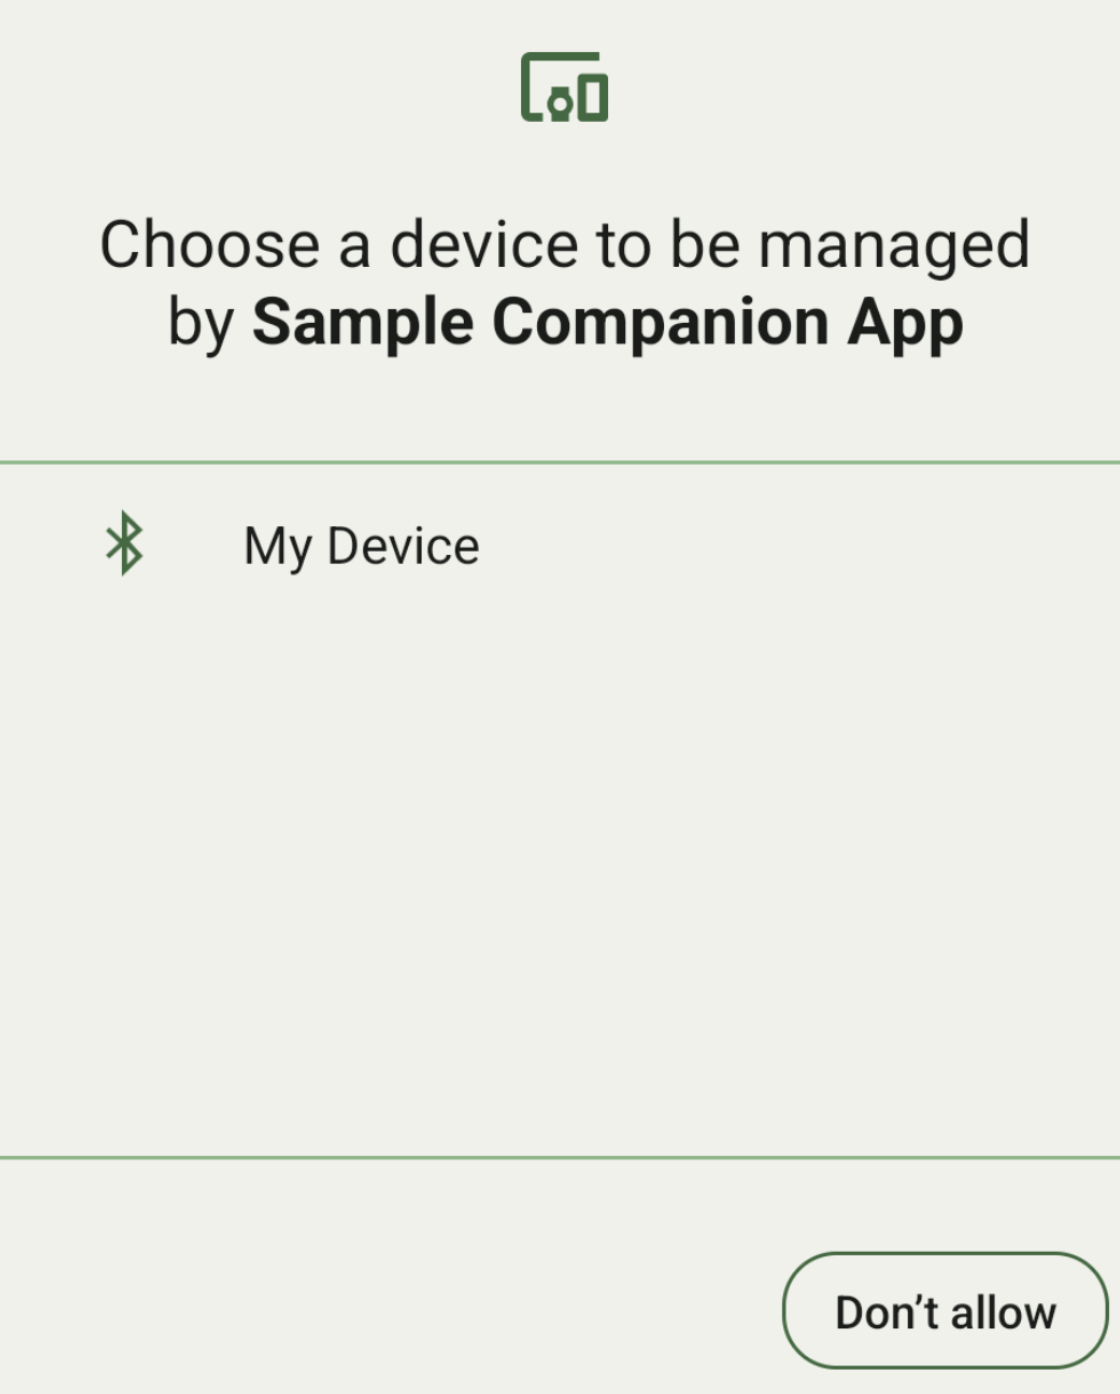 La pantalla de vinculación de dispositivos complementarios, que se limita a una sola opción de vinculación